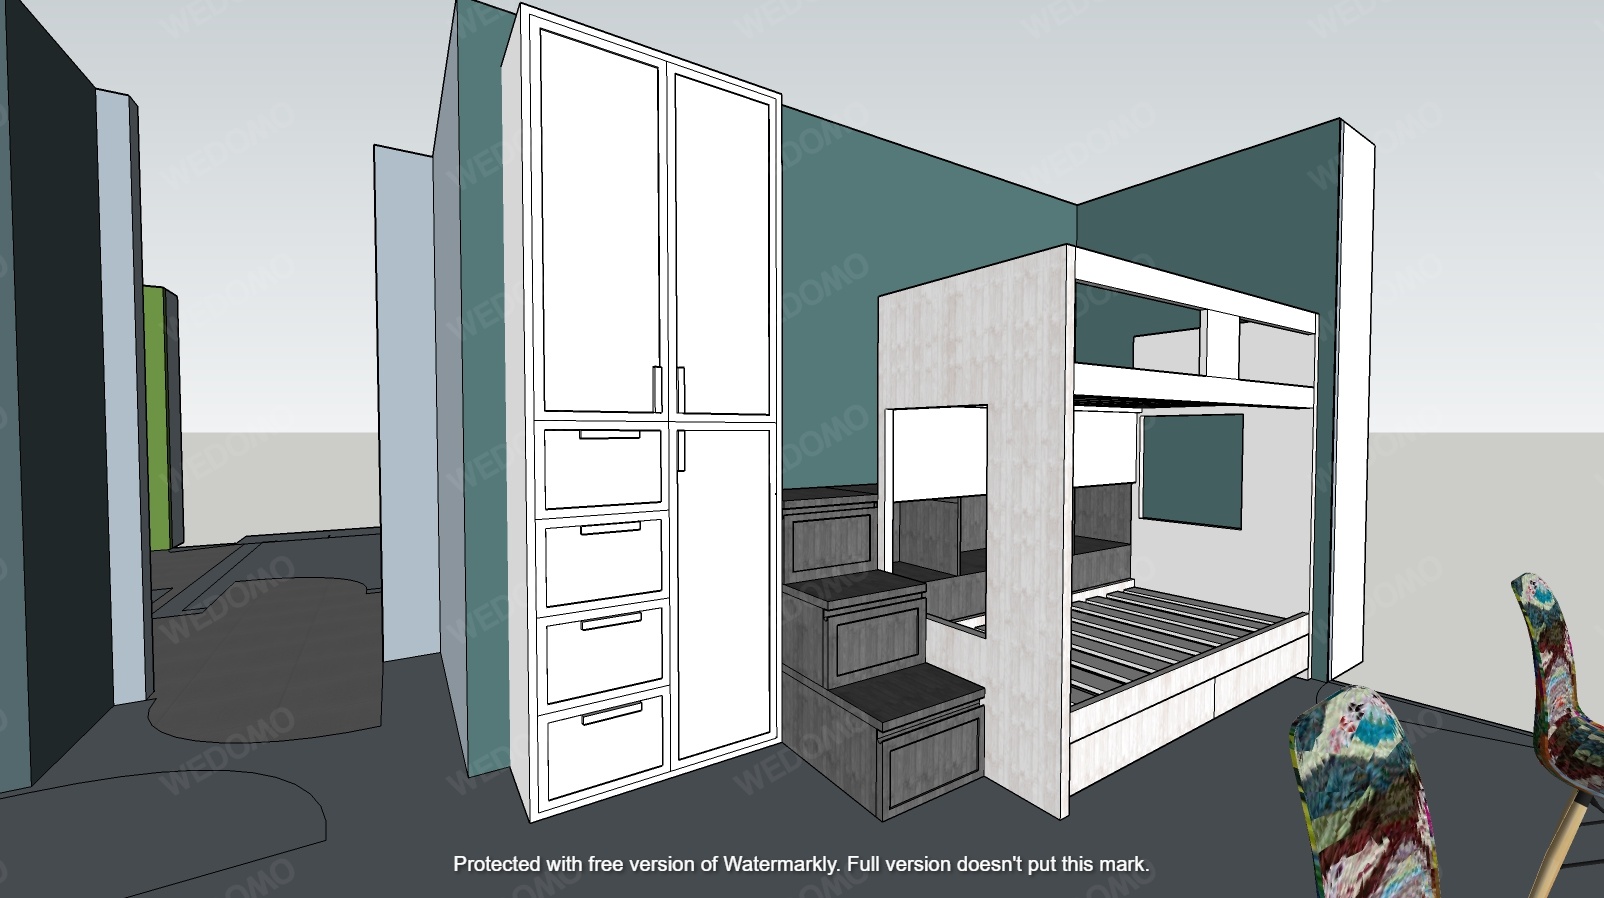 Progetto camera da letto libreria su misura 3D Wedomo Seregno Monza e Brianza Milano